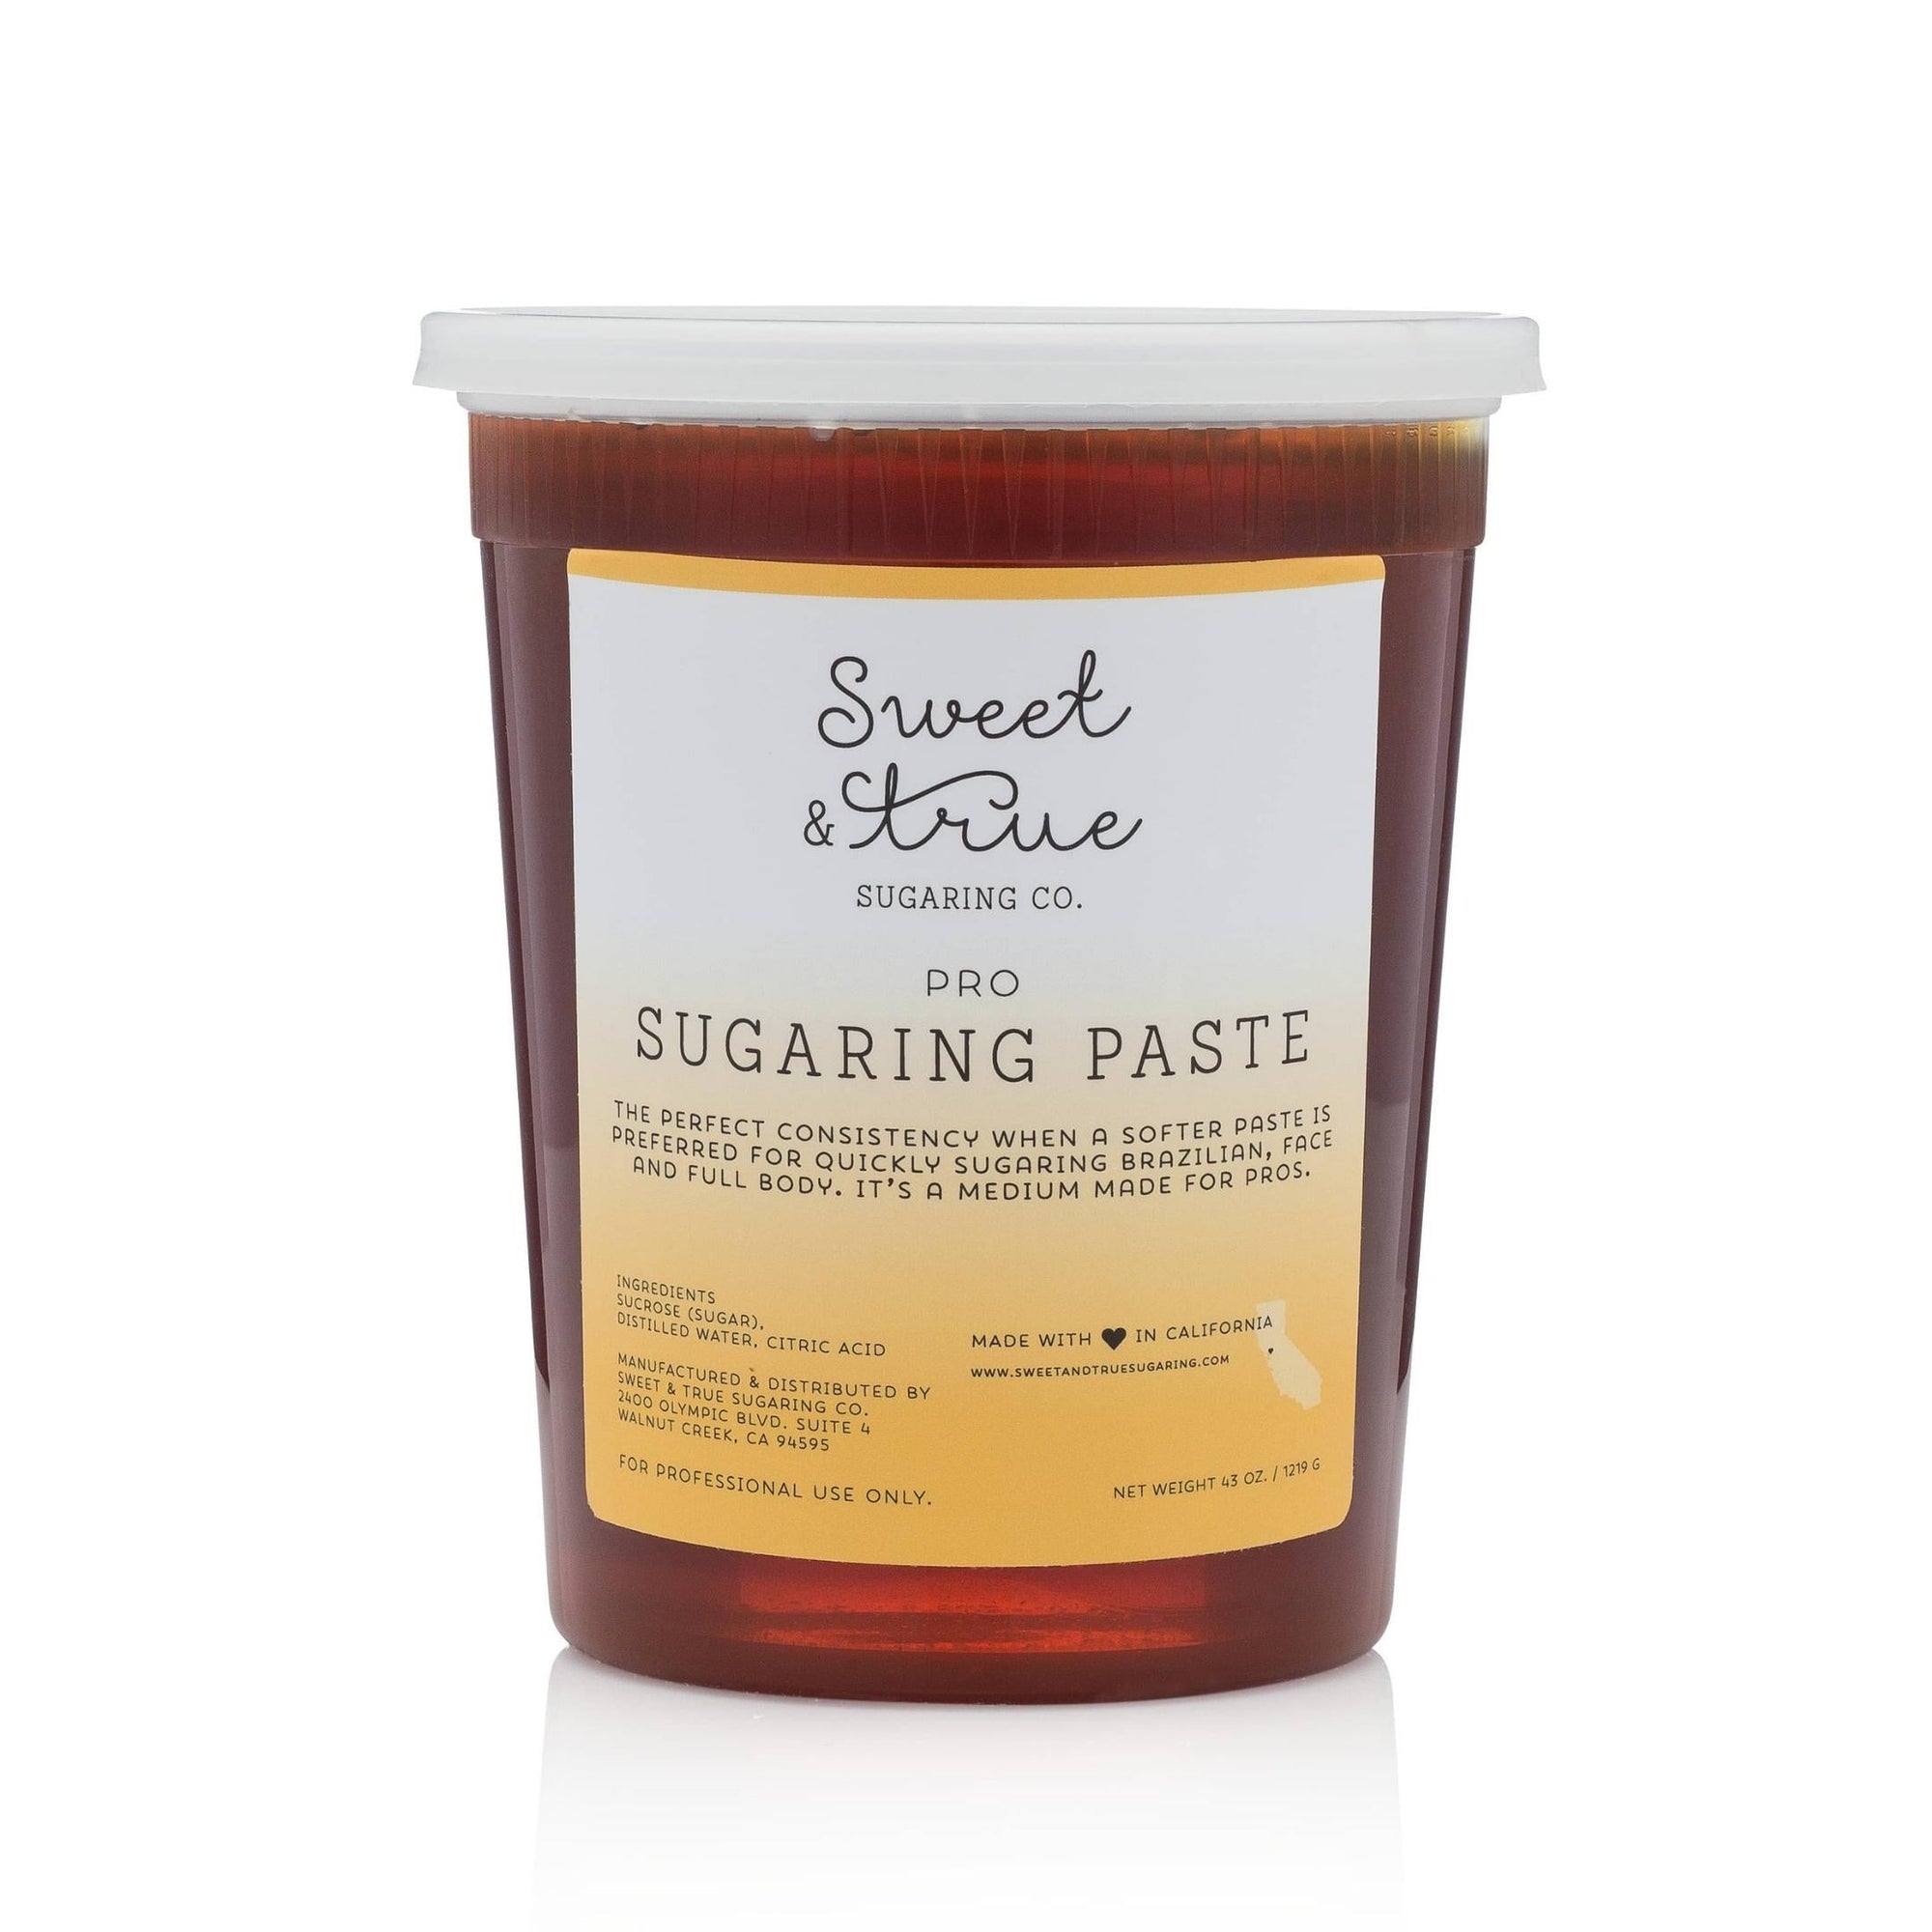 Pro - Sugaring Paste (43 oz.)